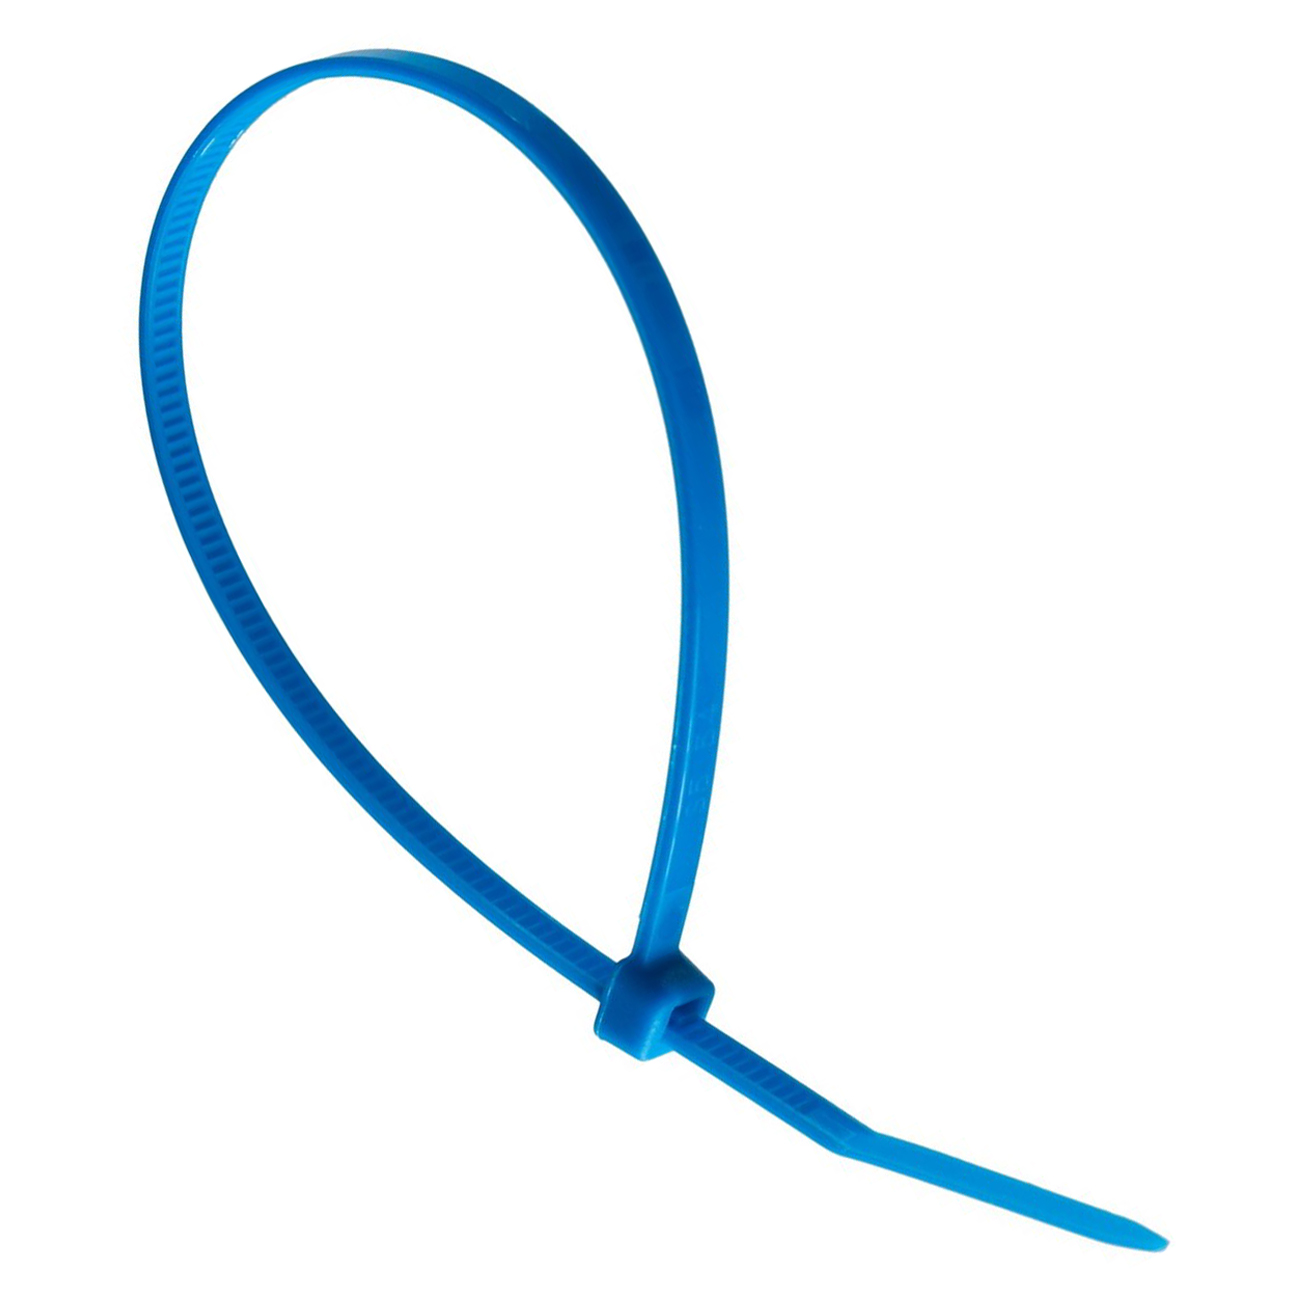 Фото Хомут кабельный стандартный Partex, 140 x 3.6 мм, синий (100 шт.) {PKB-14036-6}